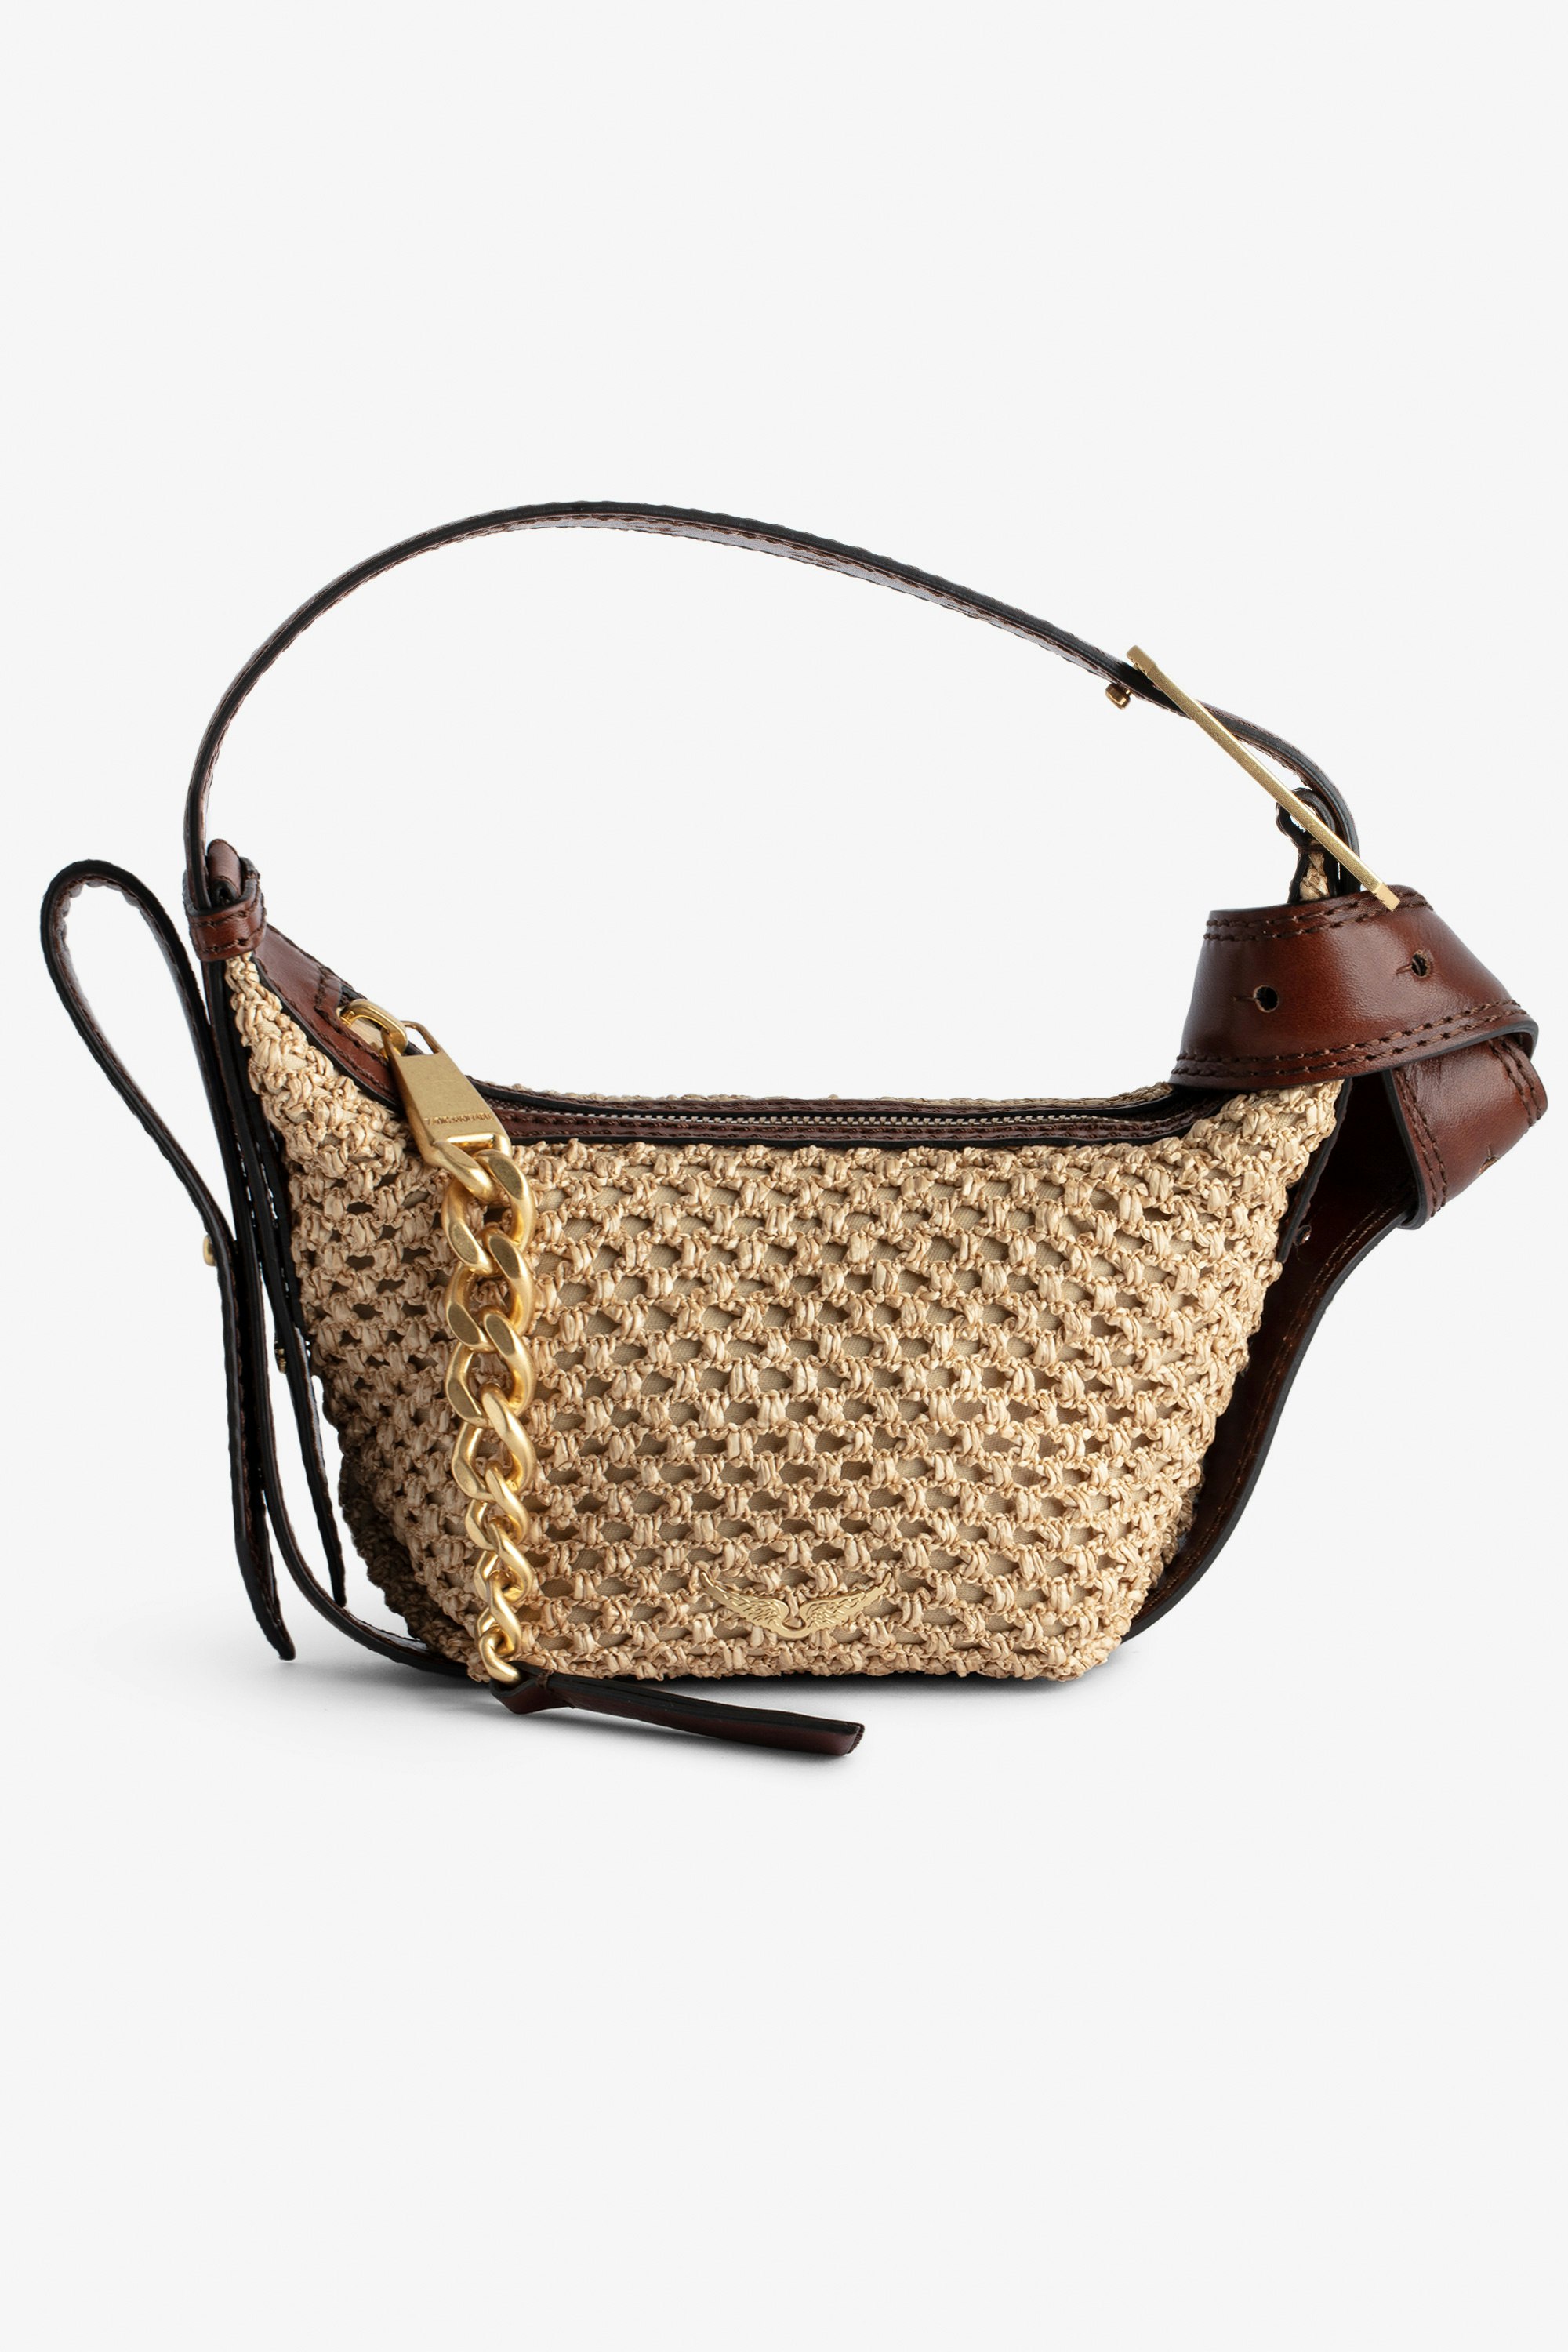 Borsa Le Cecilia XS - Piccola borsa effetto cestino beige con tracolla in pelle e fibbia metallica a C.